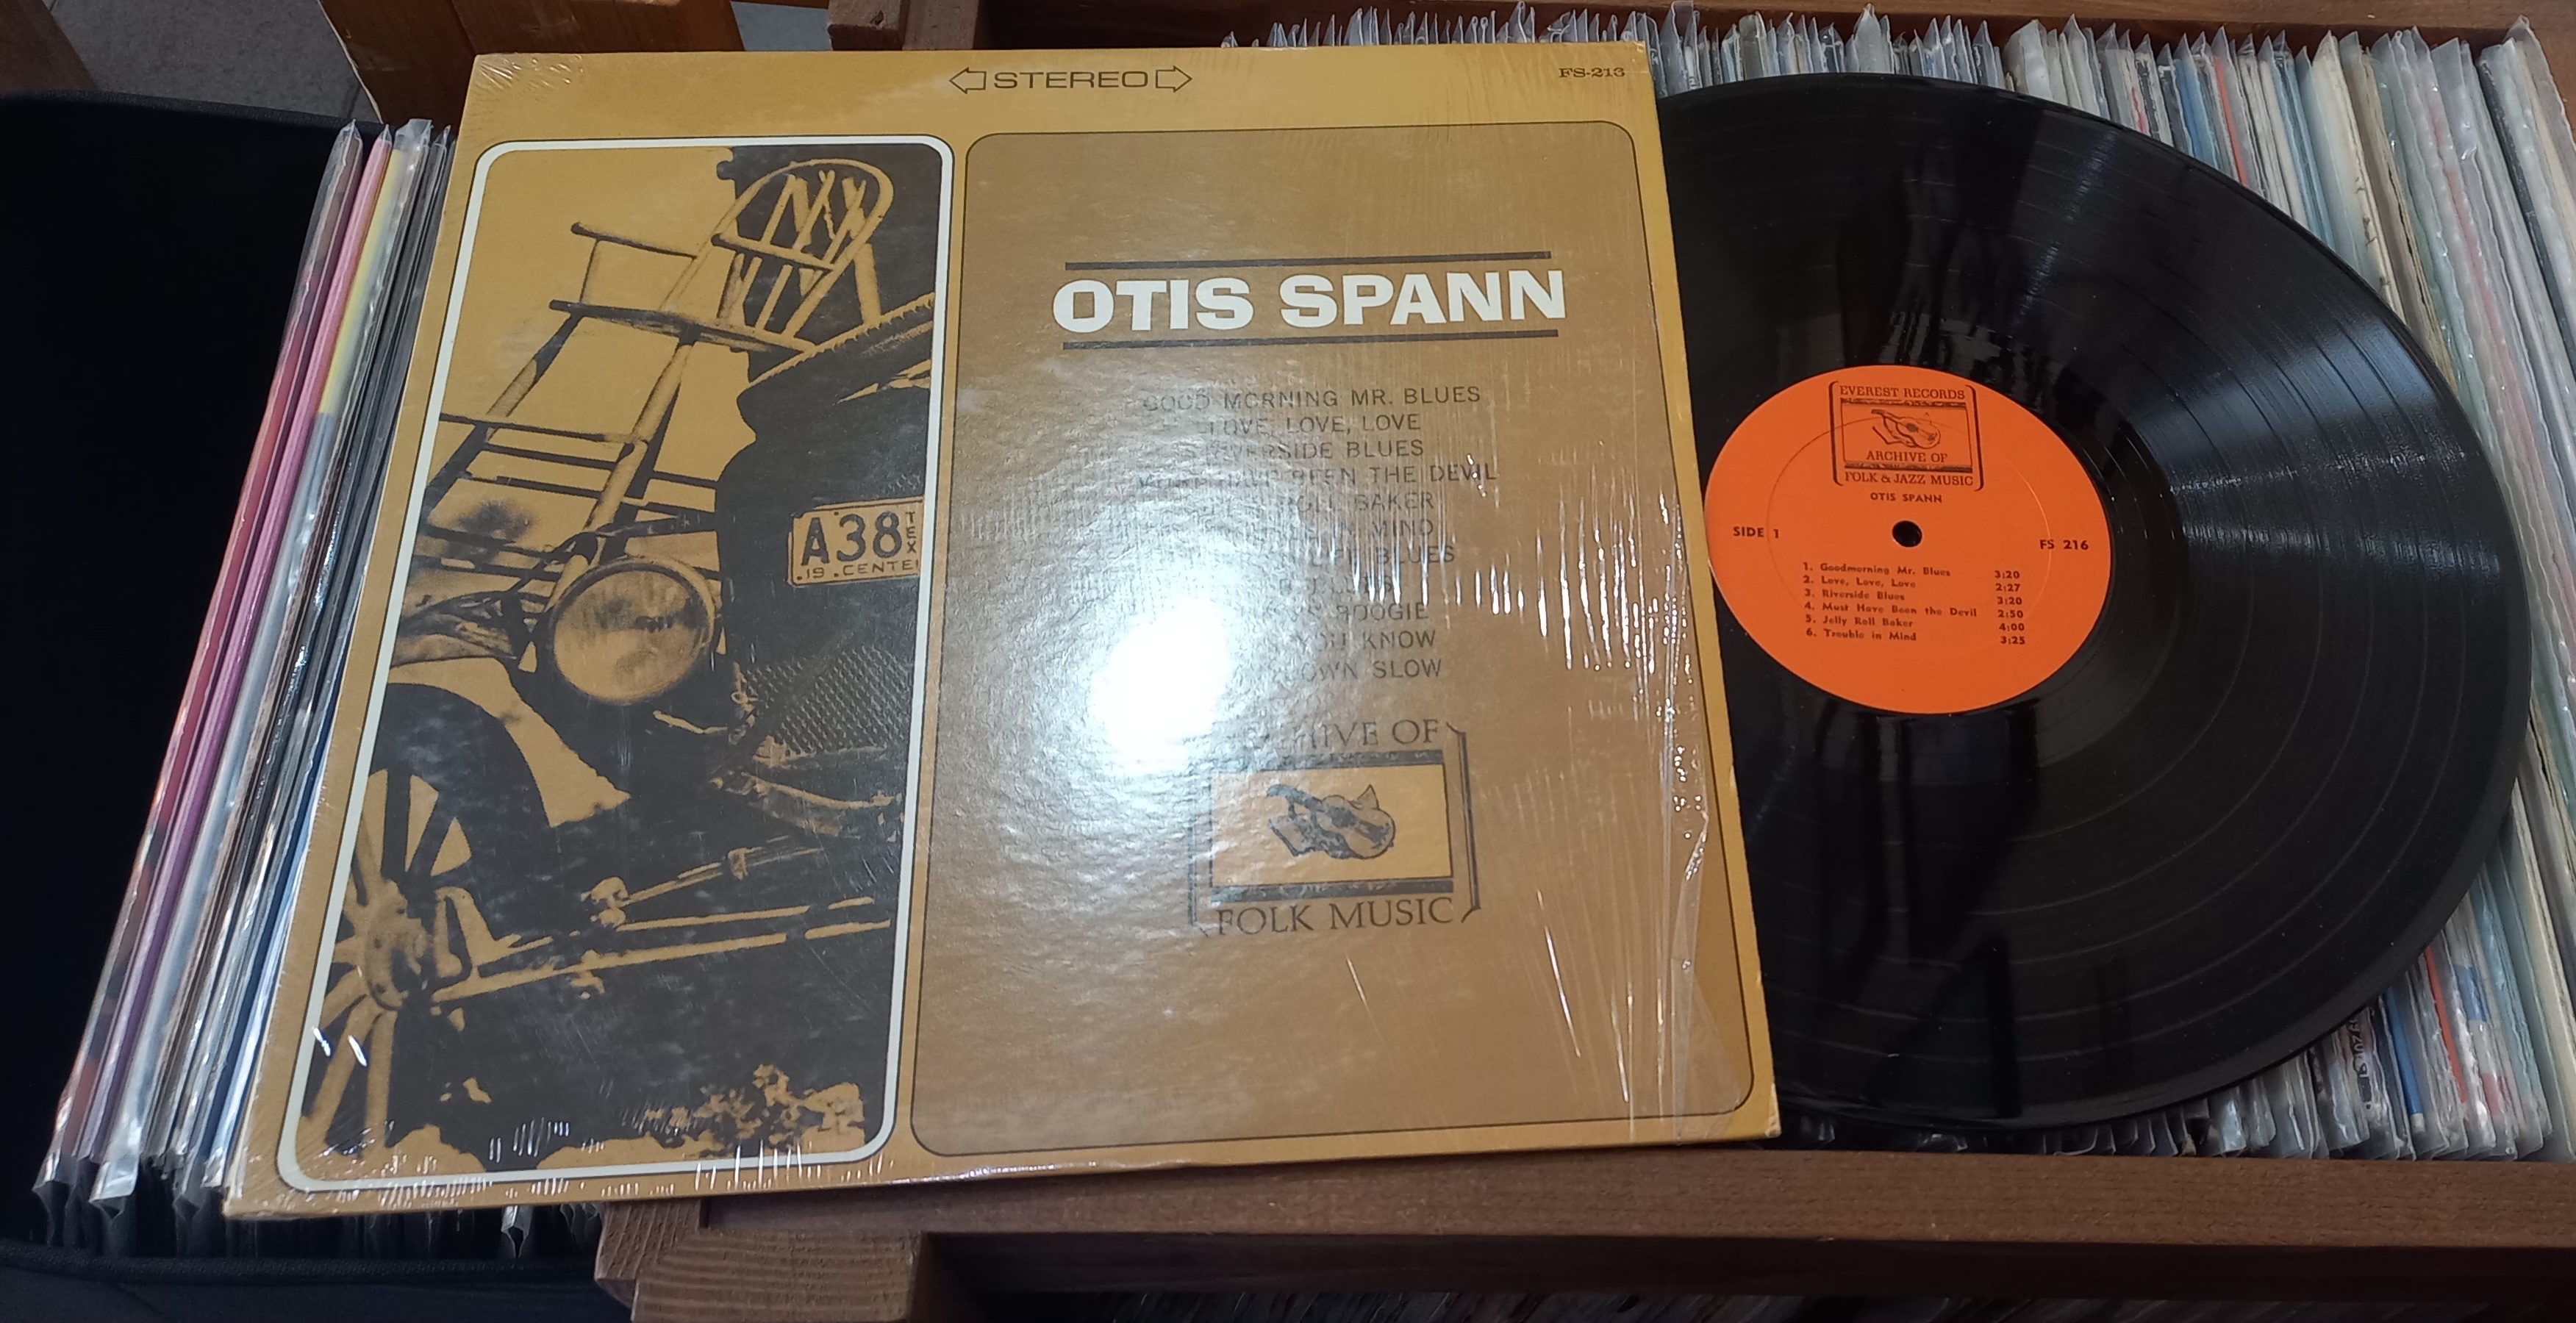 Otis Spann – Otis Spann